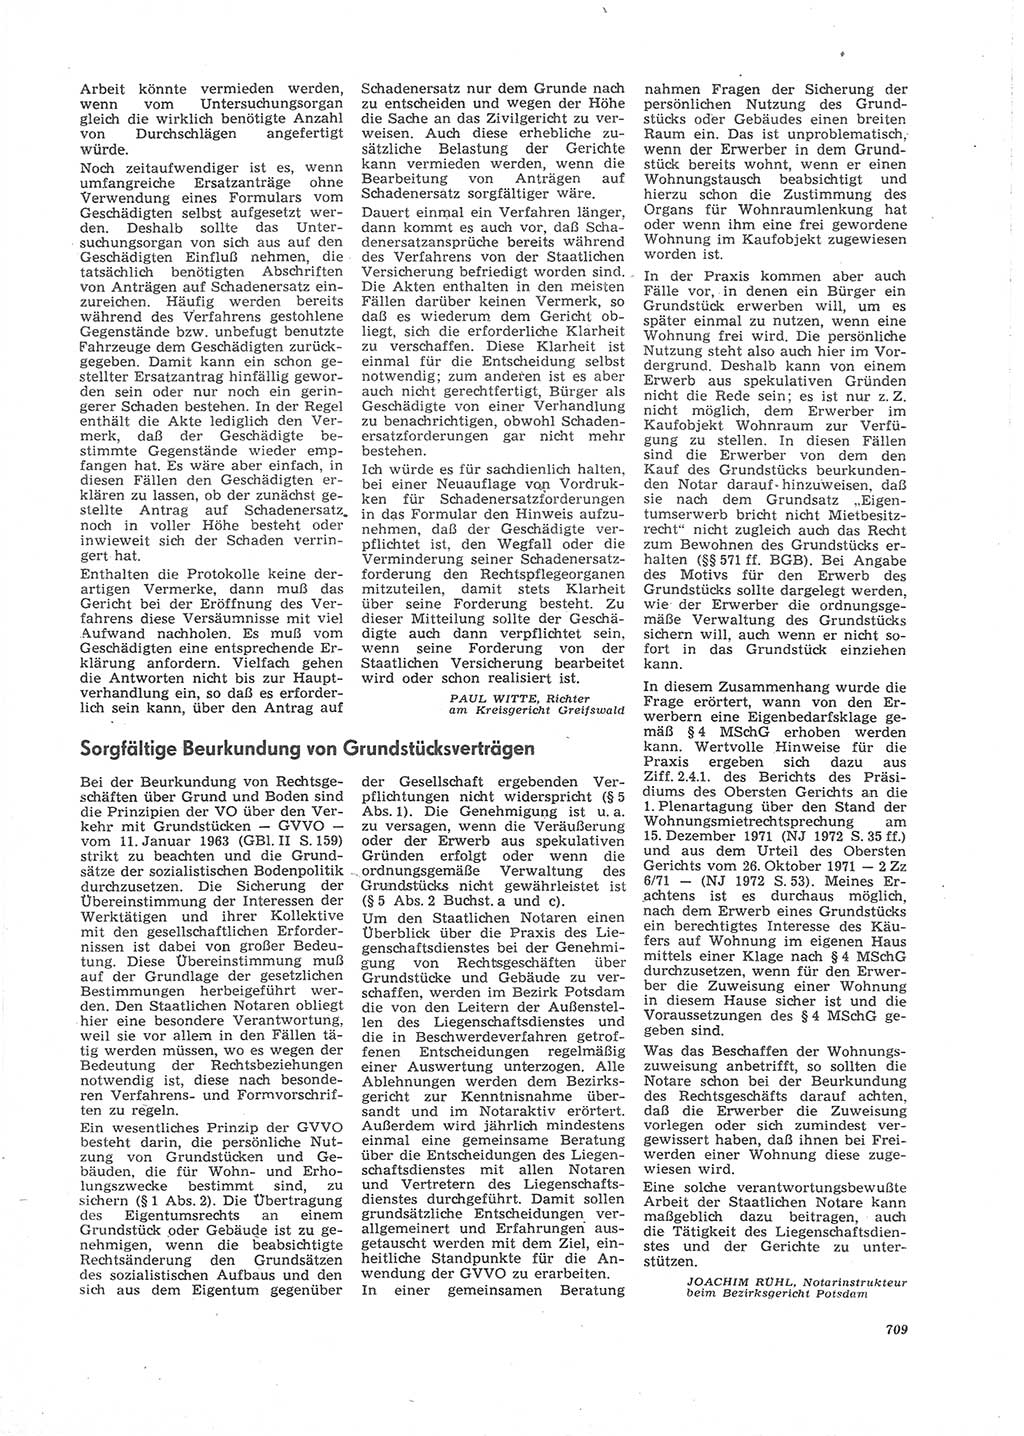 Neue Justiz (NJ), Zeitschrift für Recht und Rechtswissenschaft [Deutsche Demokratische Republik (DDR)], 26. Jahrgang 1972, Seite 709 (NJ DDR 1972, S. 709)